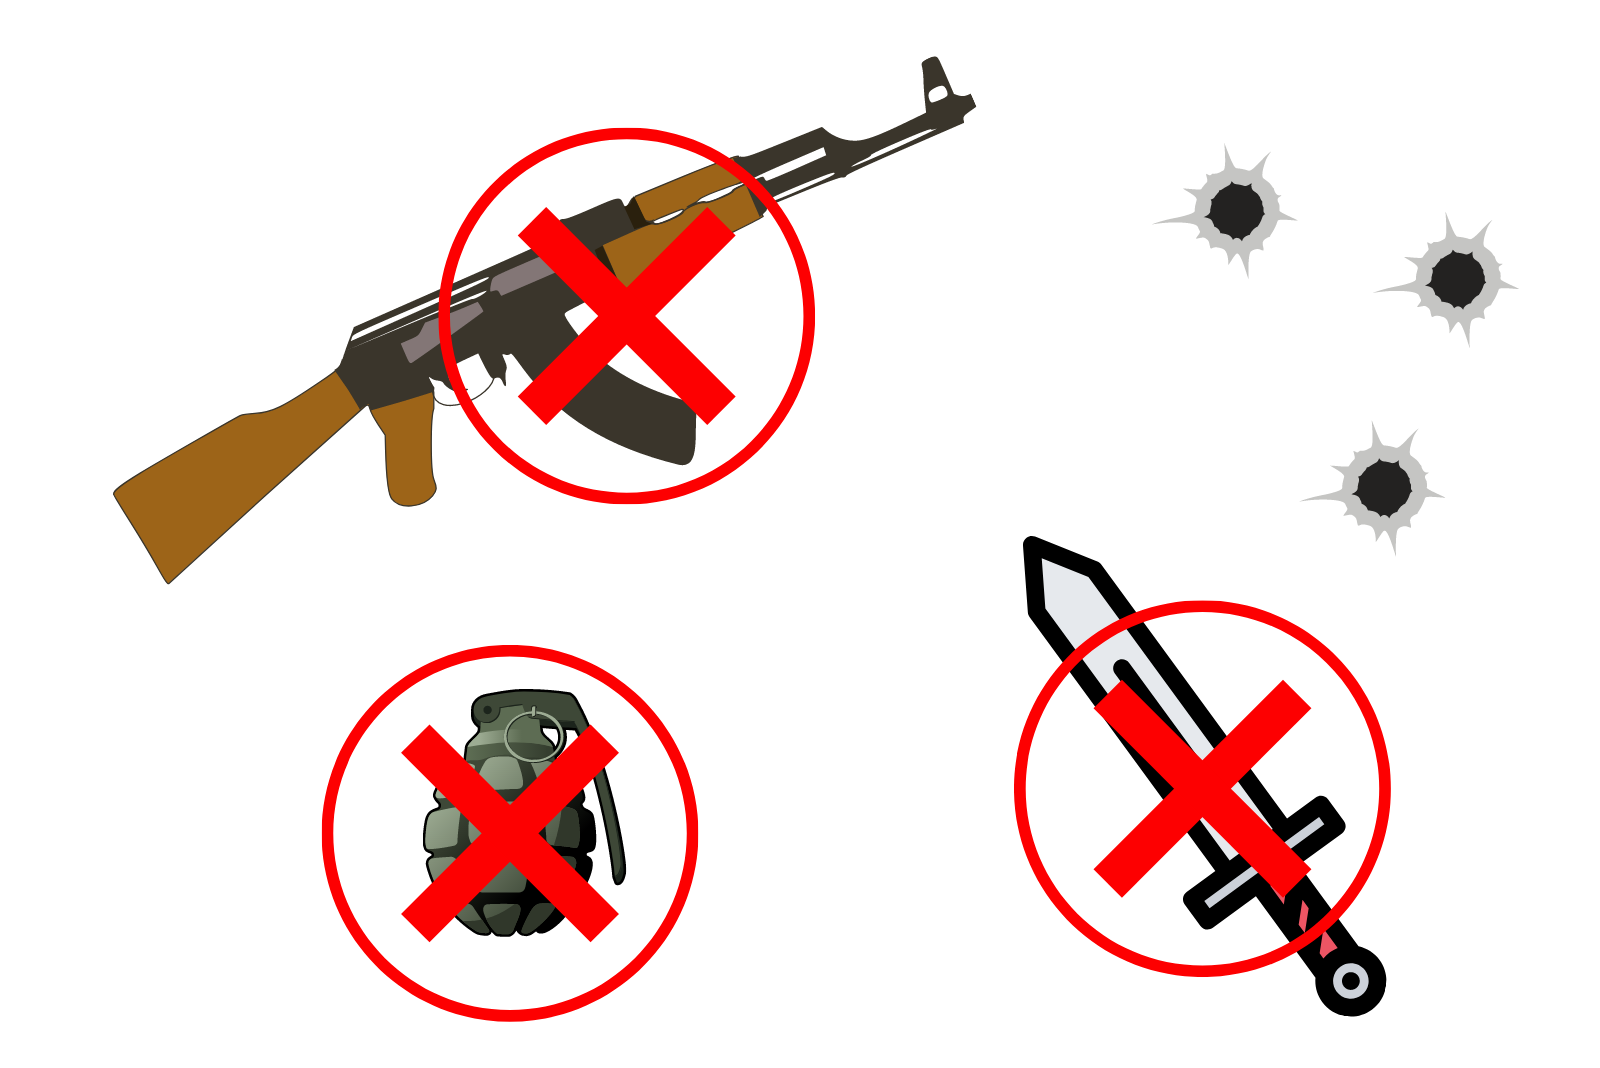 Súng, đạn và vũ khí là nhóm các sản phẩm bất hợp pháp